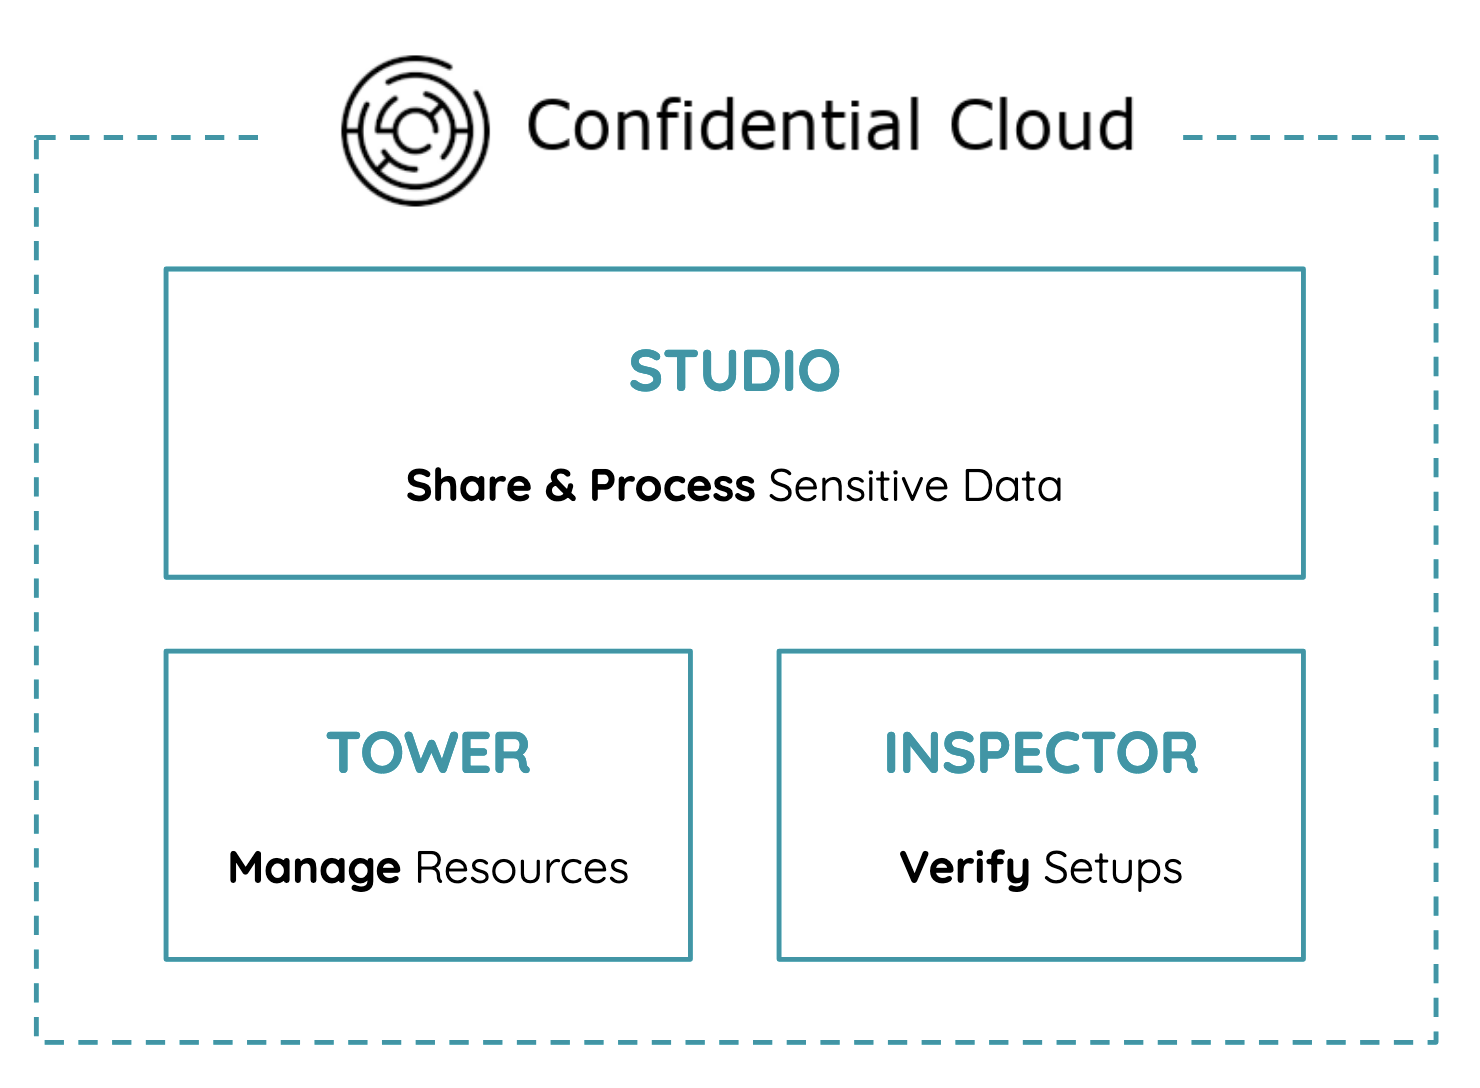 Confidential Cloud Architecture